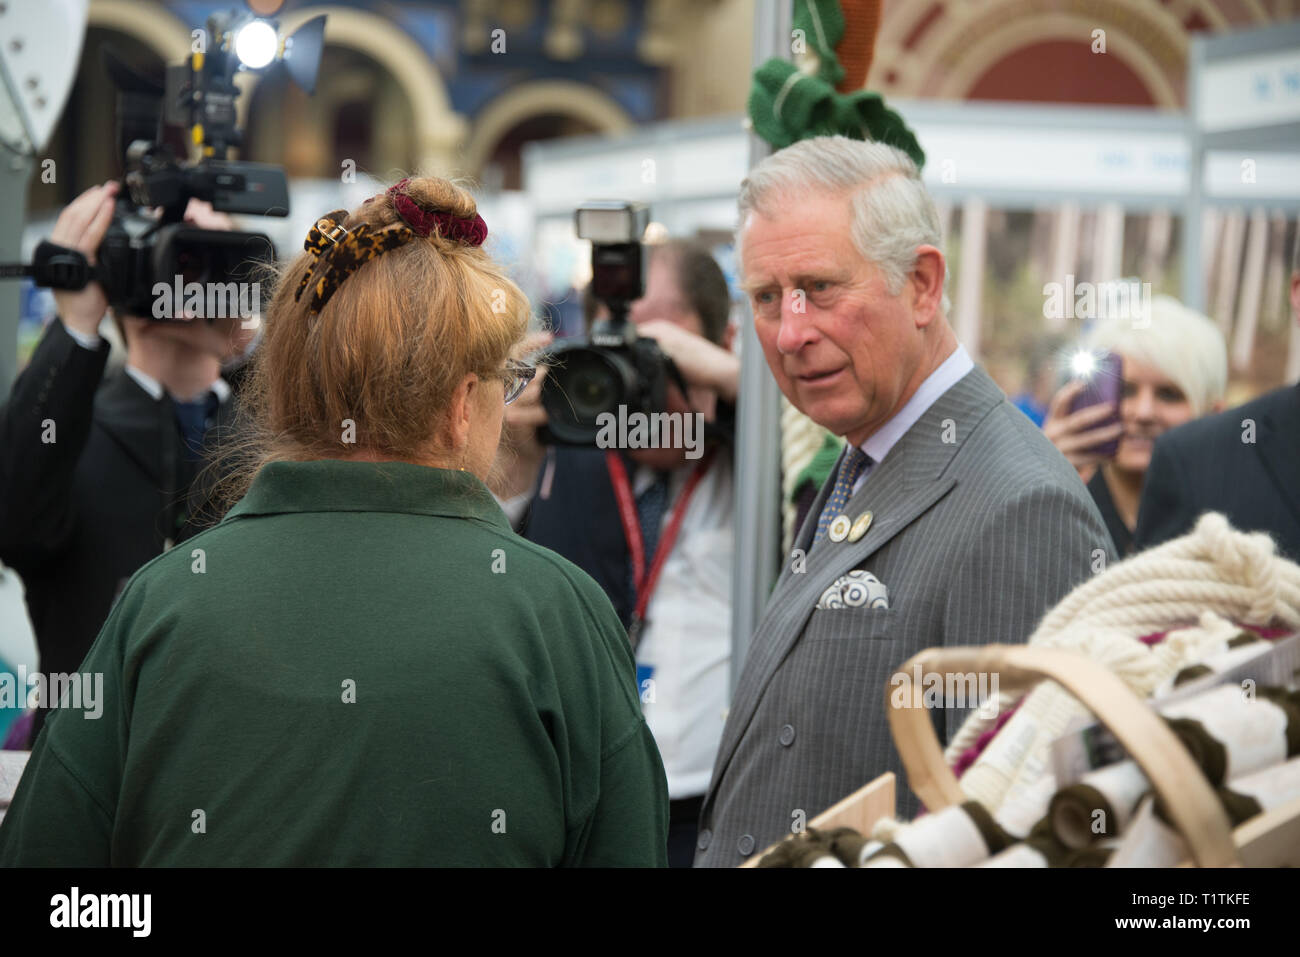 Le Prince Charles sur Walkabout Royale, Charles, prince de Galles est l'héritier au trône britannique comme l'aîné des enfants de la reine Elizabeth II. Banque D'Images